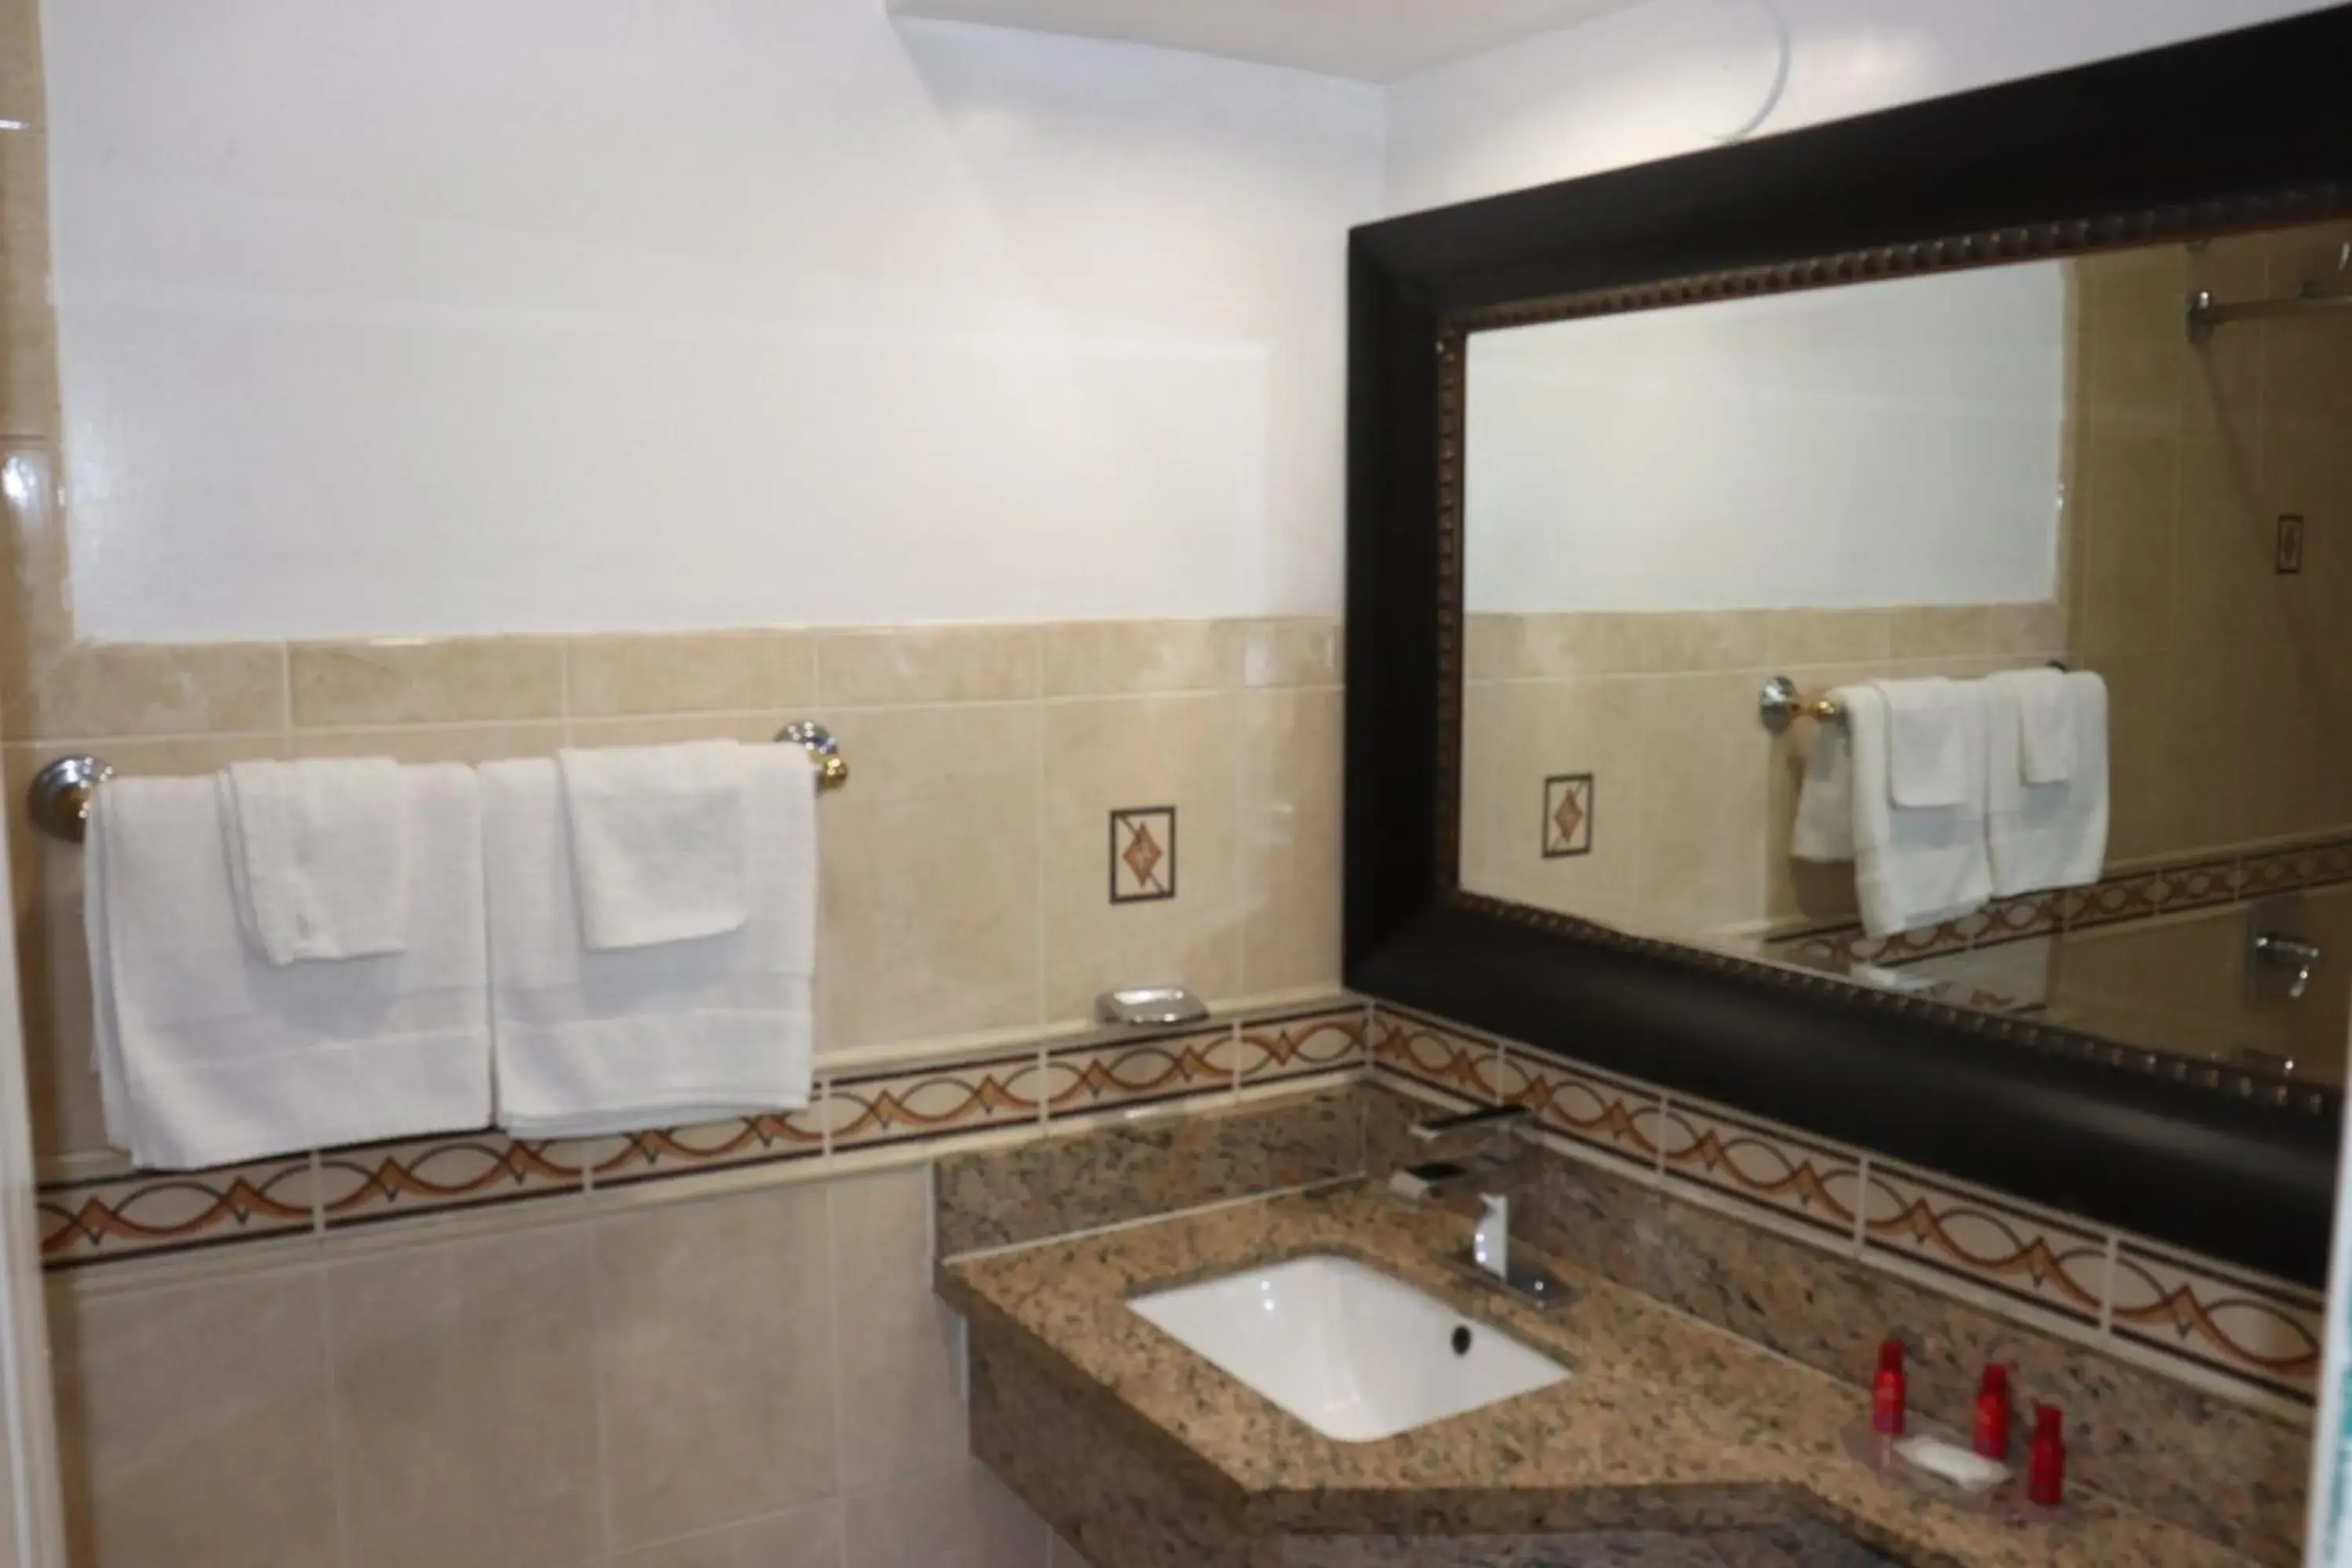 Bathroom in El Dorado Motel